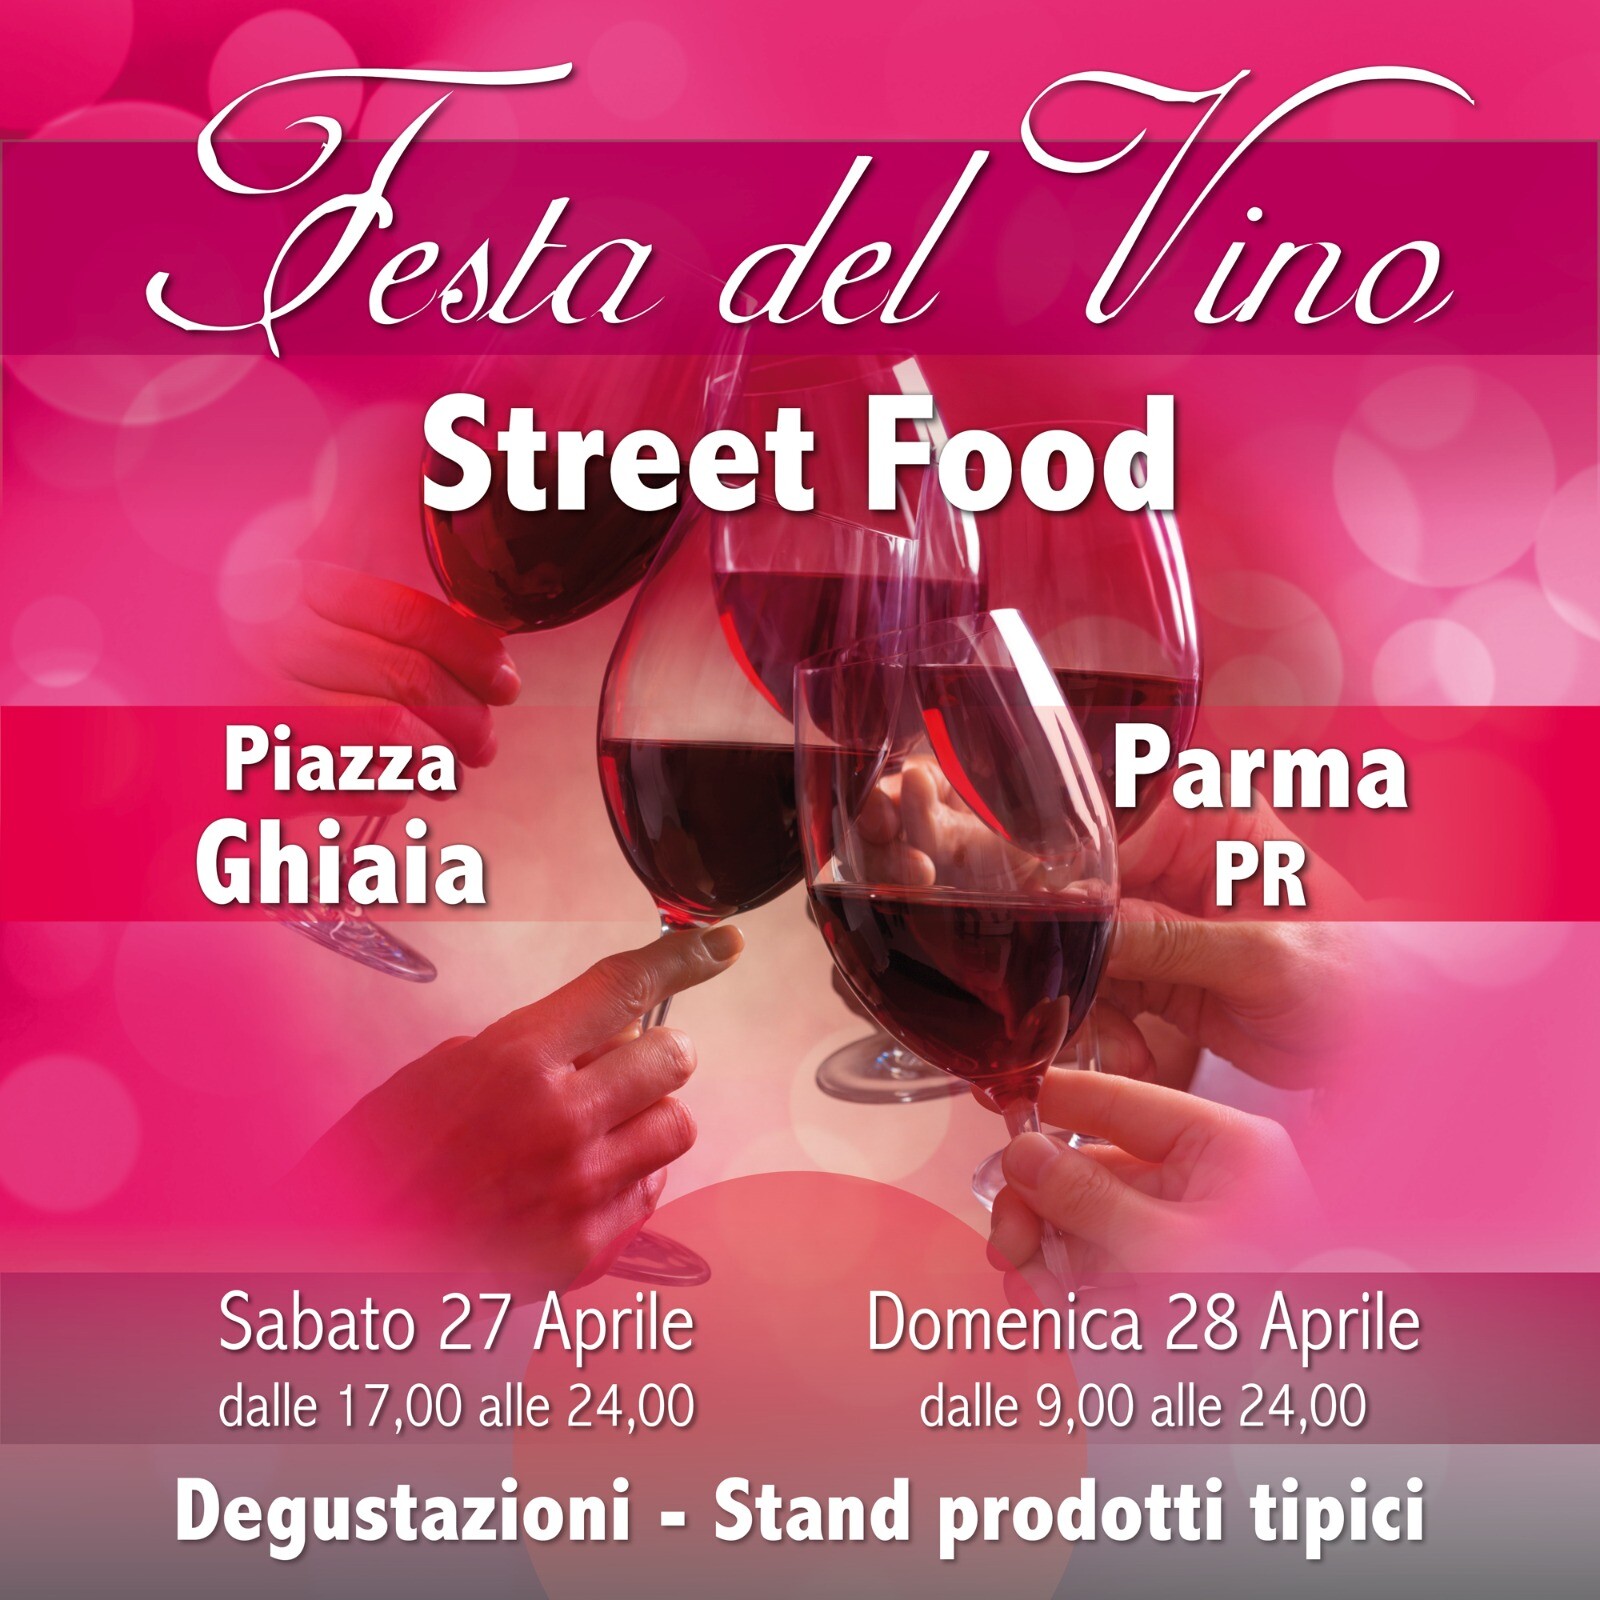 Festa del Vino e Street Food in Piazza Ghiaia a Parma